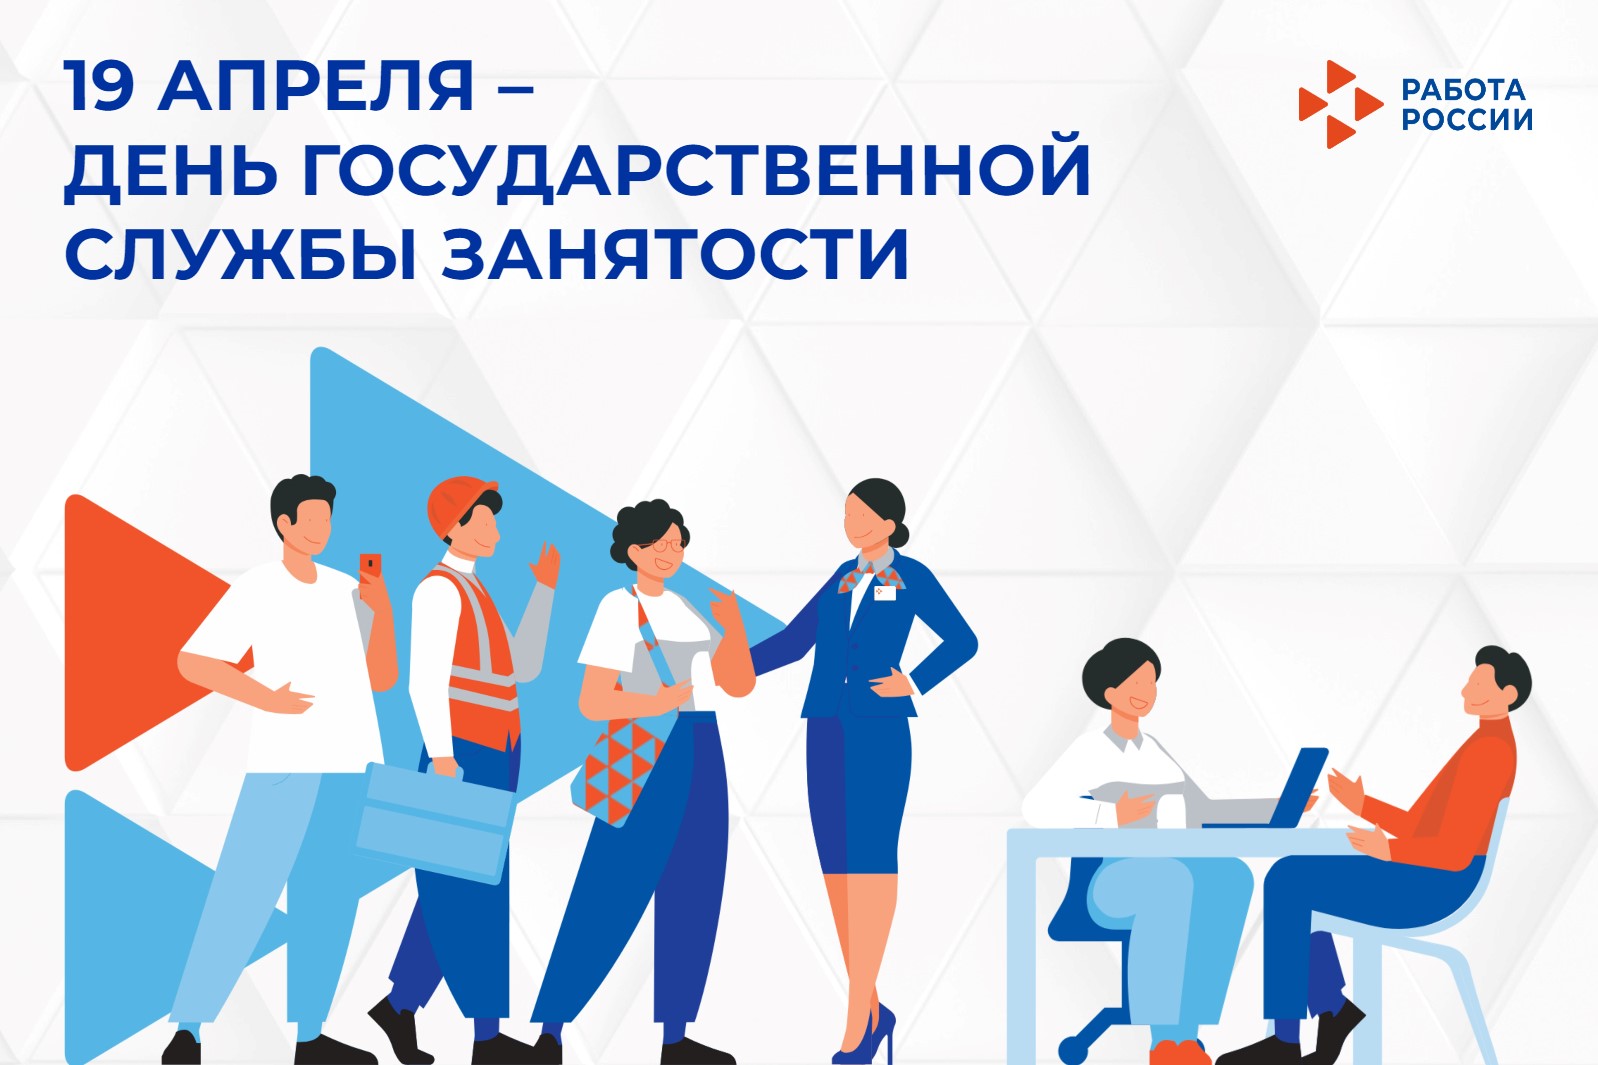 19 апреля – День государственной службы занятости населения РФ